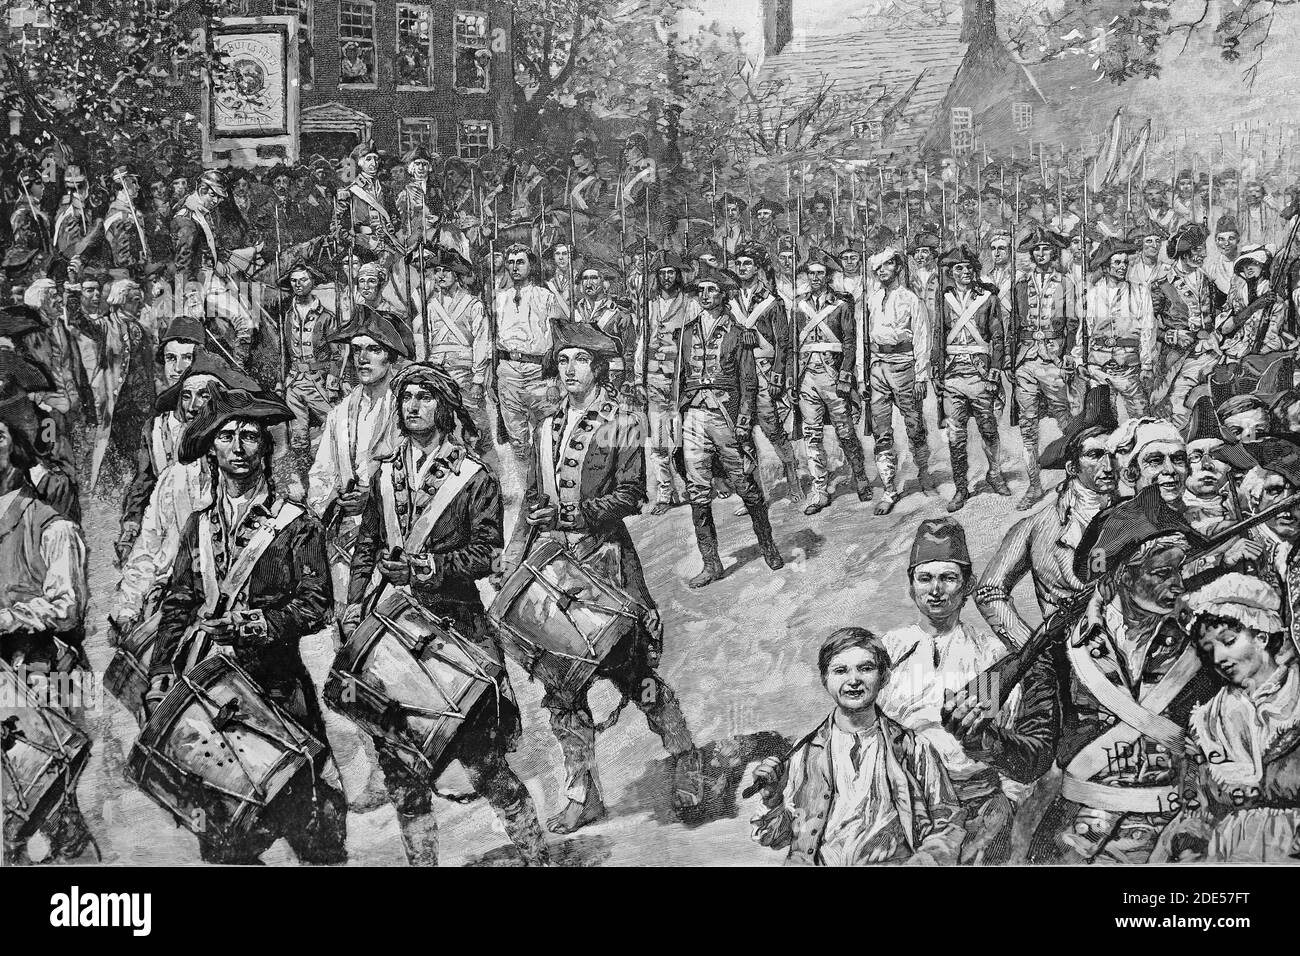 Parade durch New York der US-Truppen nach der Unabhängigkeit von England. November 1783. Antike Illustration. 1884. Stockfoto